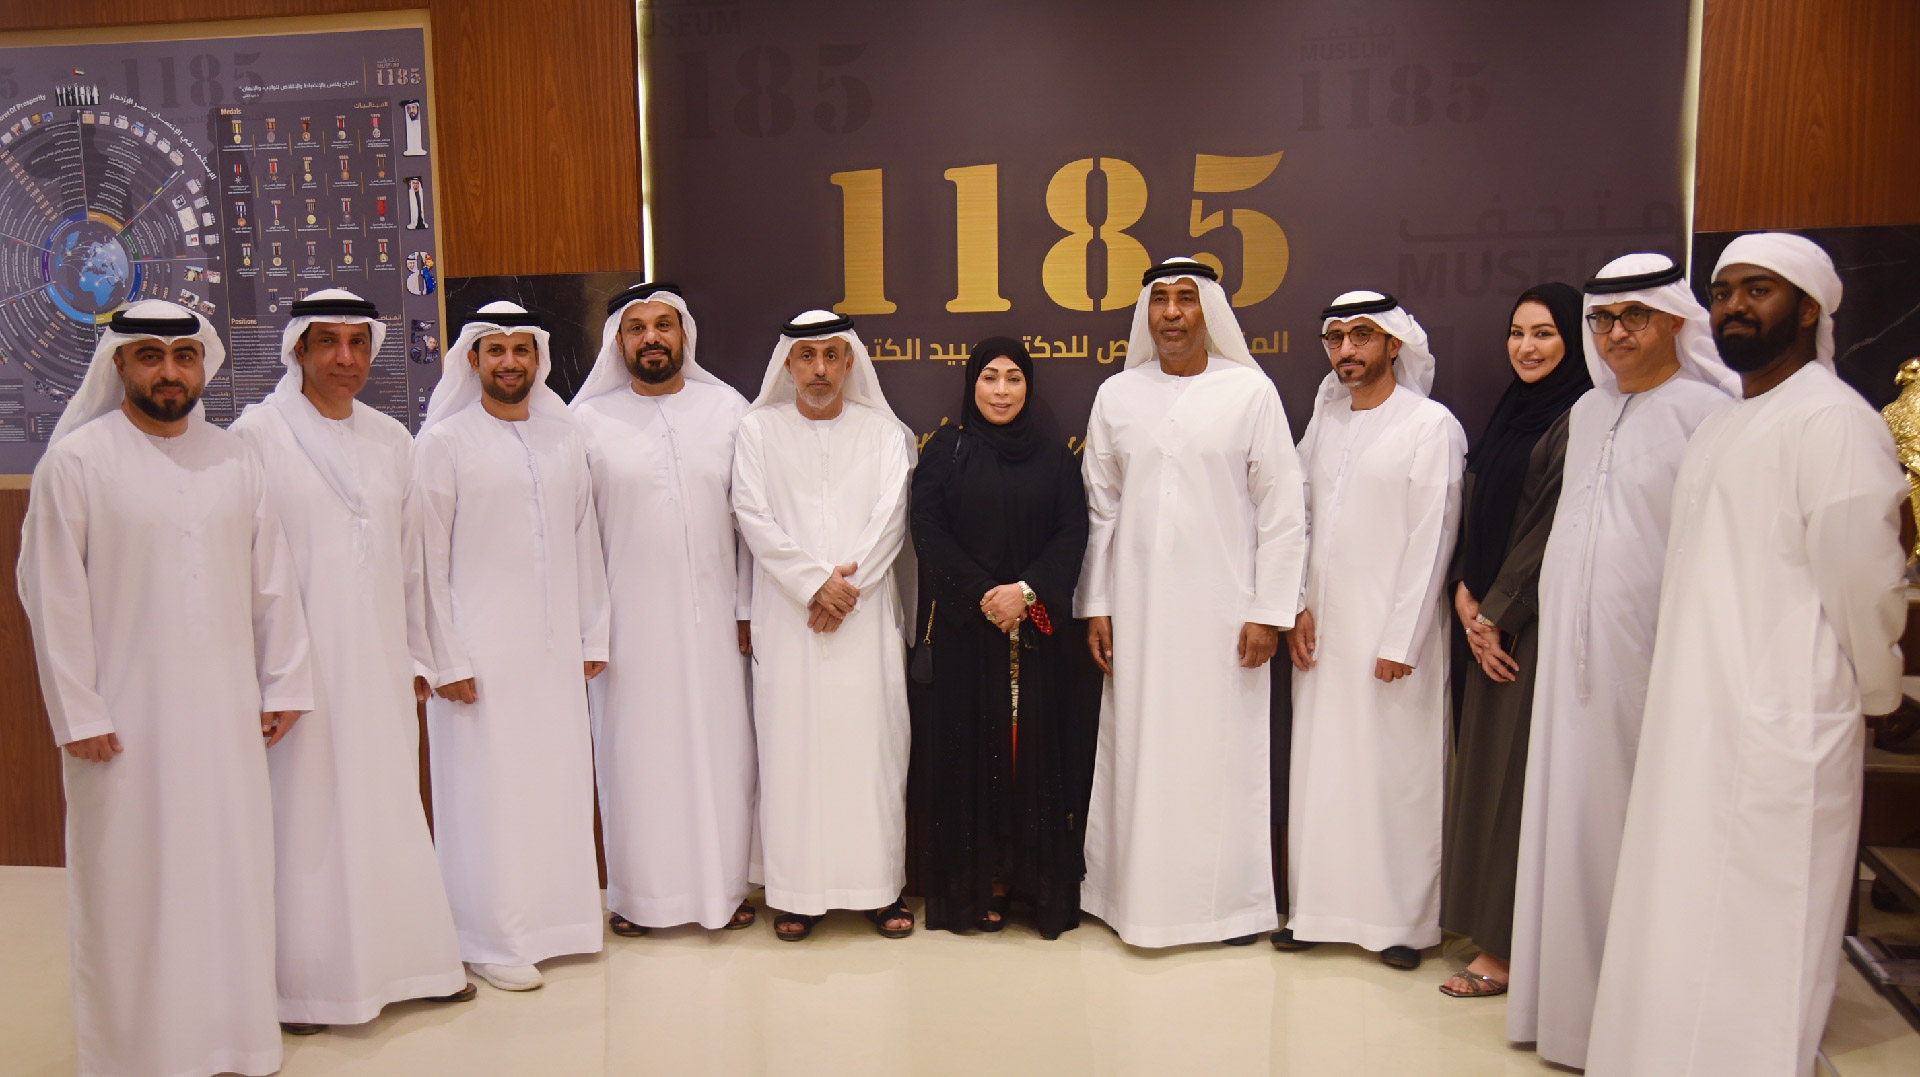 وفد جمعية الصحفيين الإماراتية يزور متحف "1185" في أبوظبي